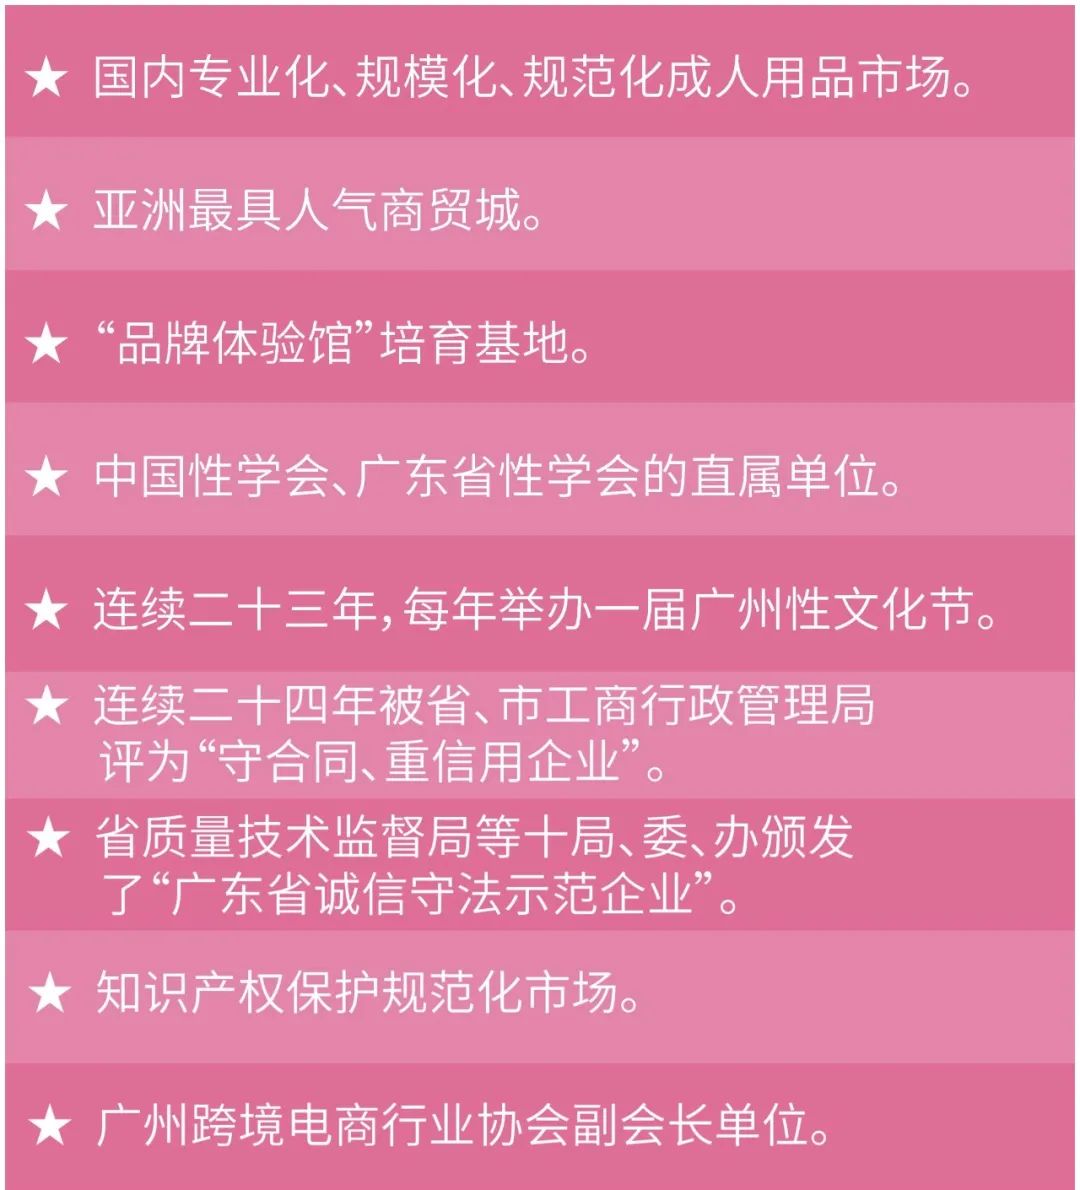 相伴二十五载 感恩四季同行丨热烈庆祝广东成人用品市场成立25周年(图3)